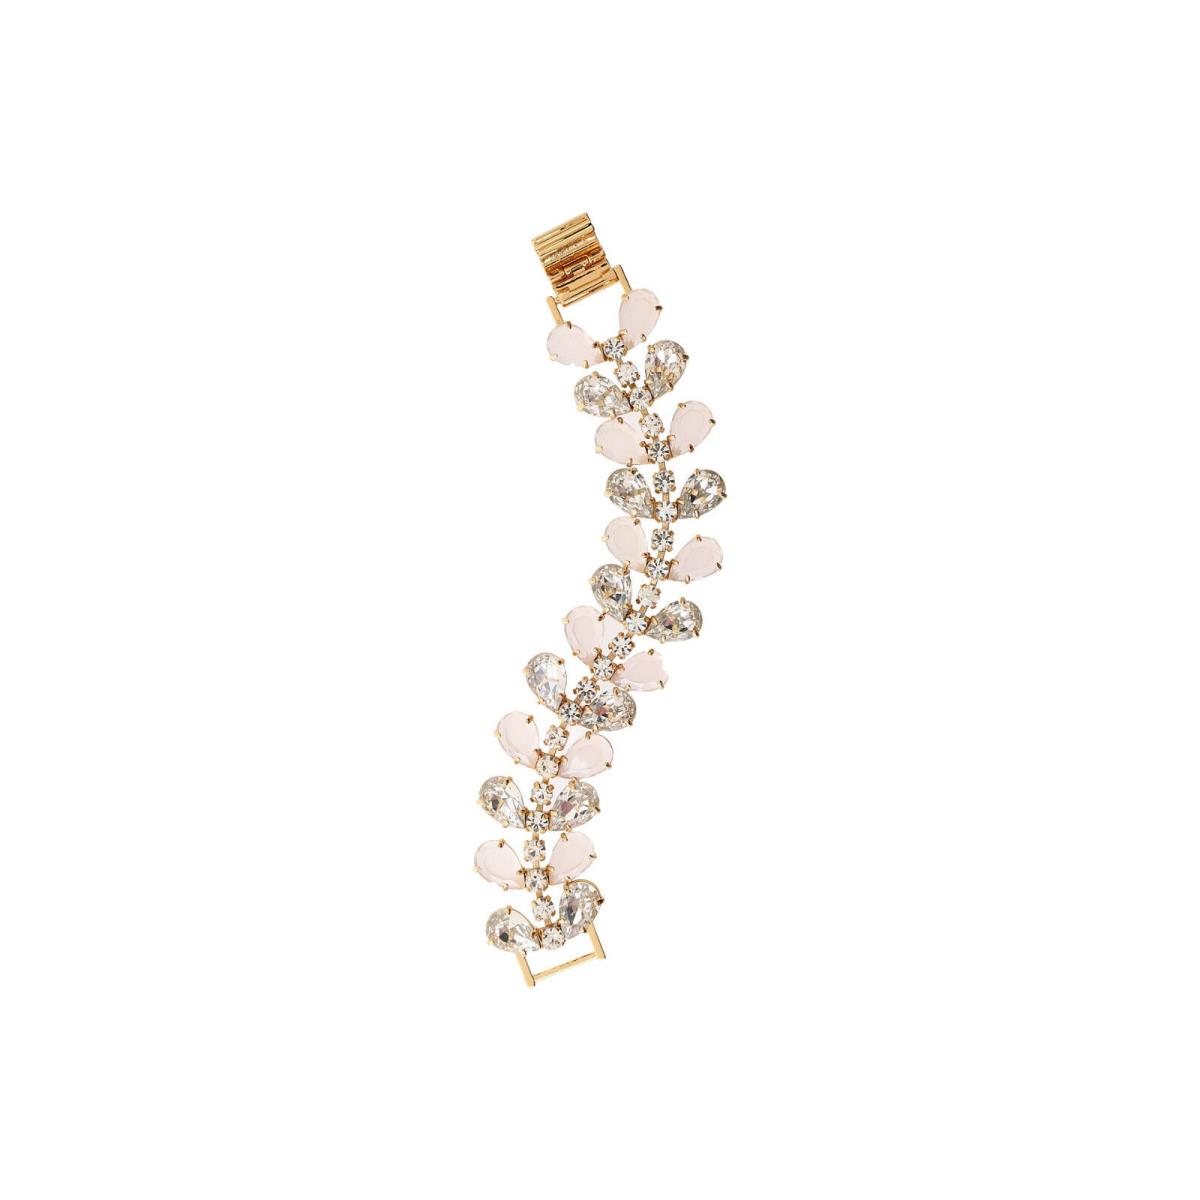 Kate Spade NY Secret Garden Line Bracelet Opalescent Faceted Crystals Bridal